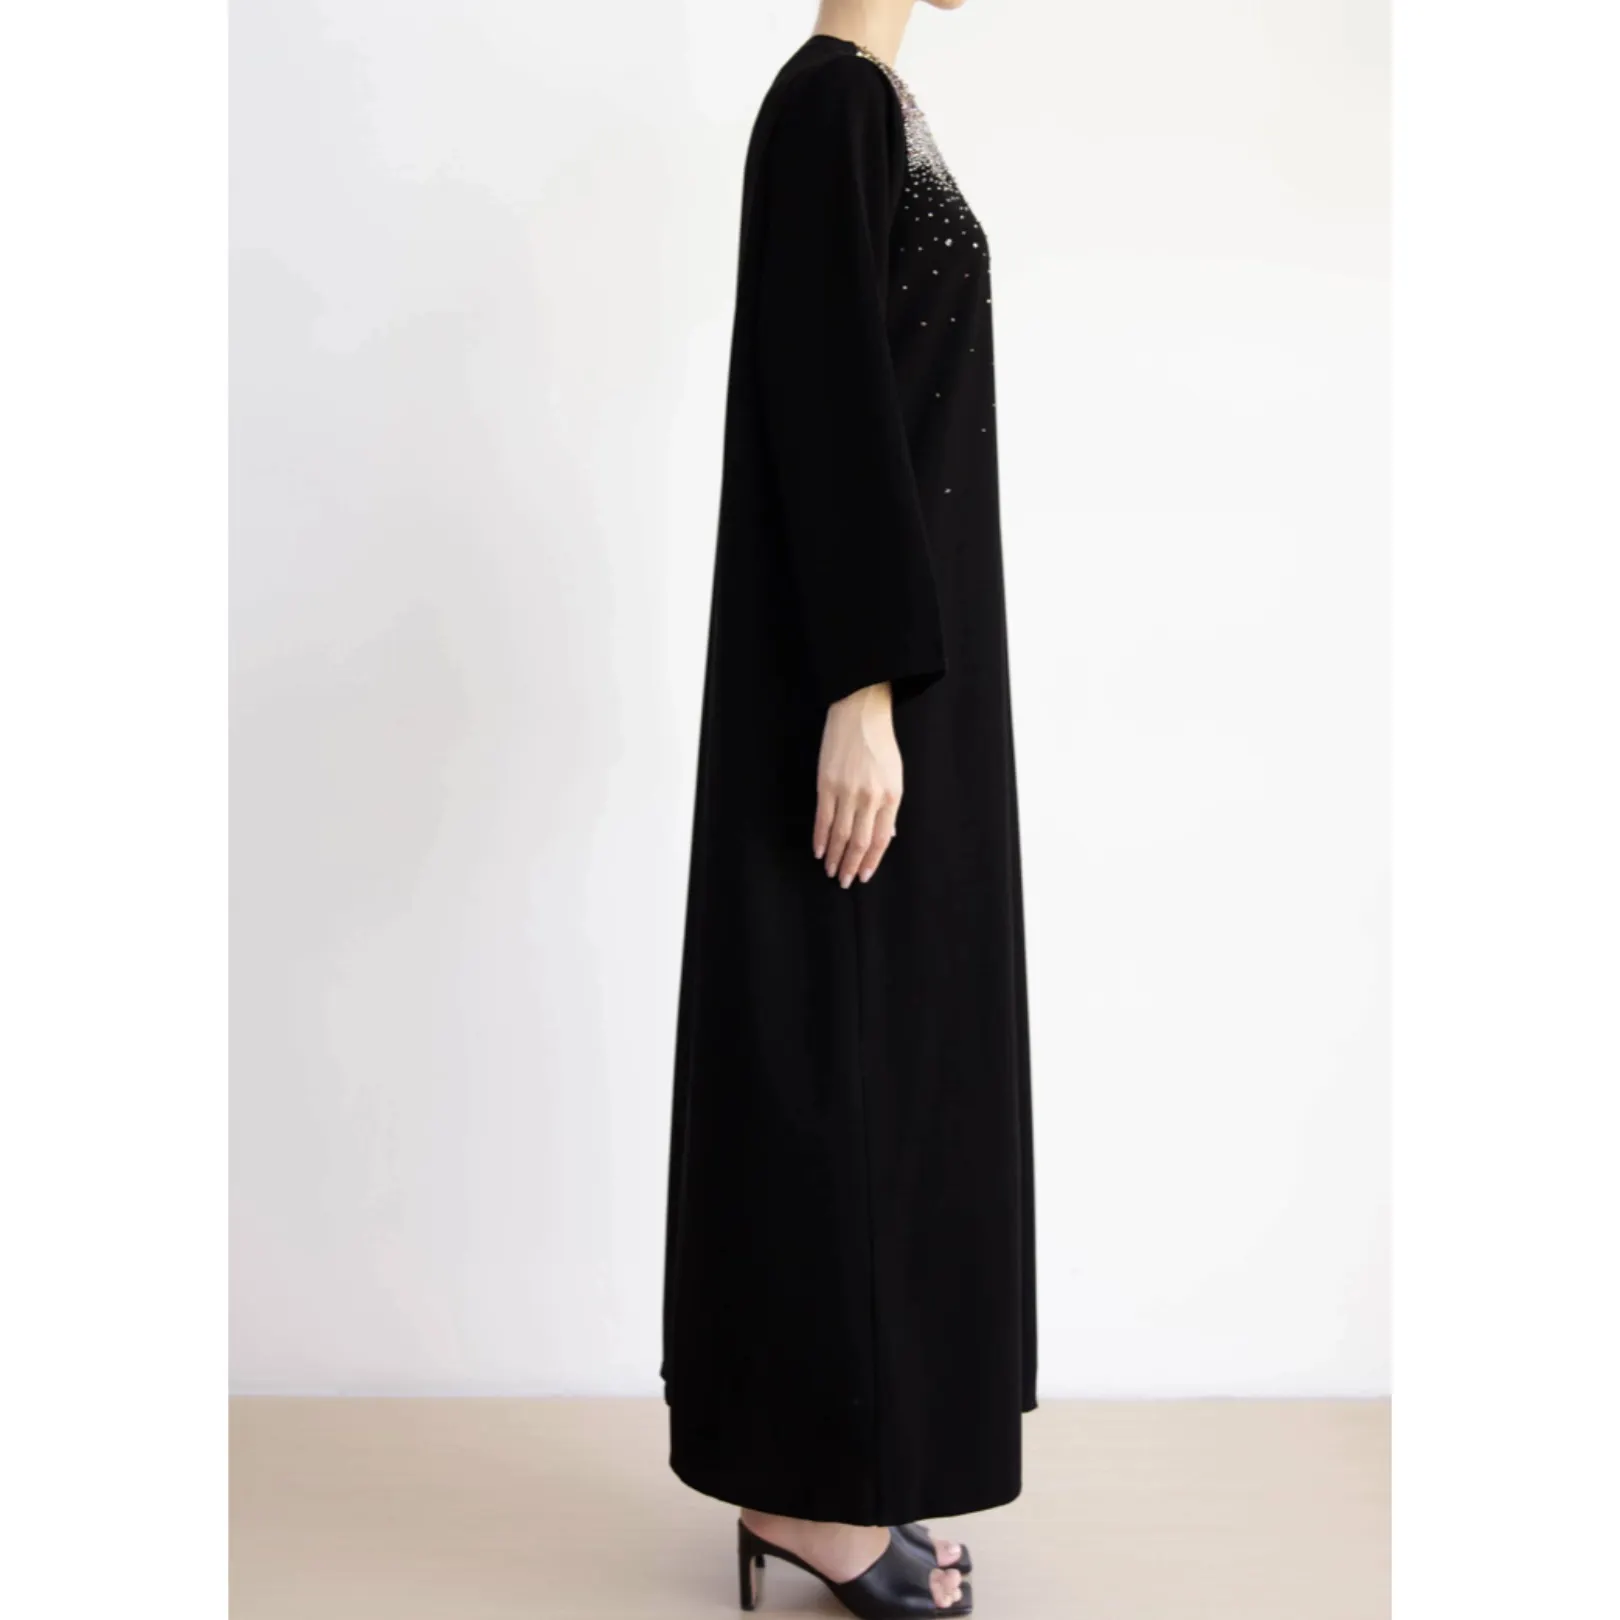 2022 New Eid Dubai Türkei einfarbig einfach bescheiden Kaftan islamische Kleidung Frauen muslimisches Kleid Abaya